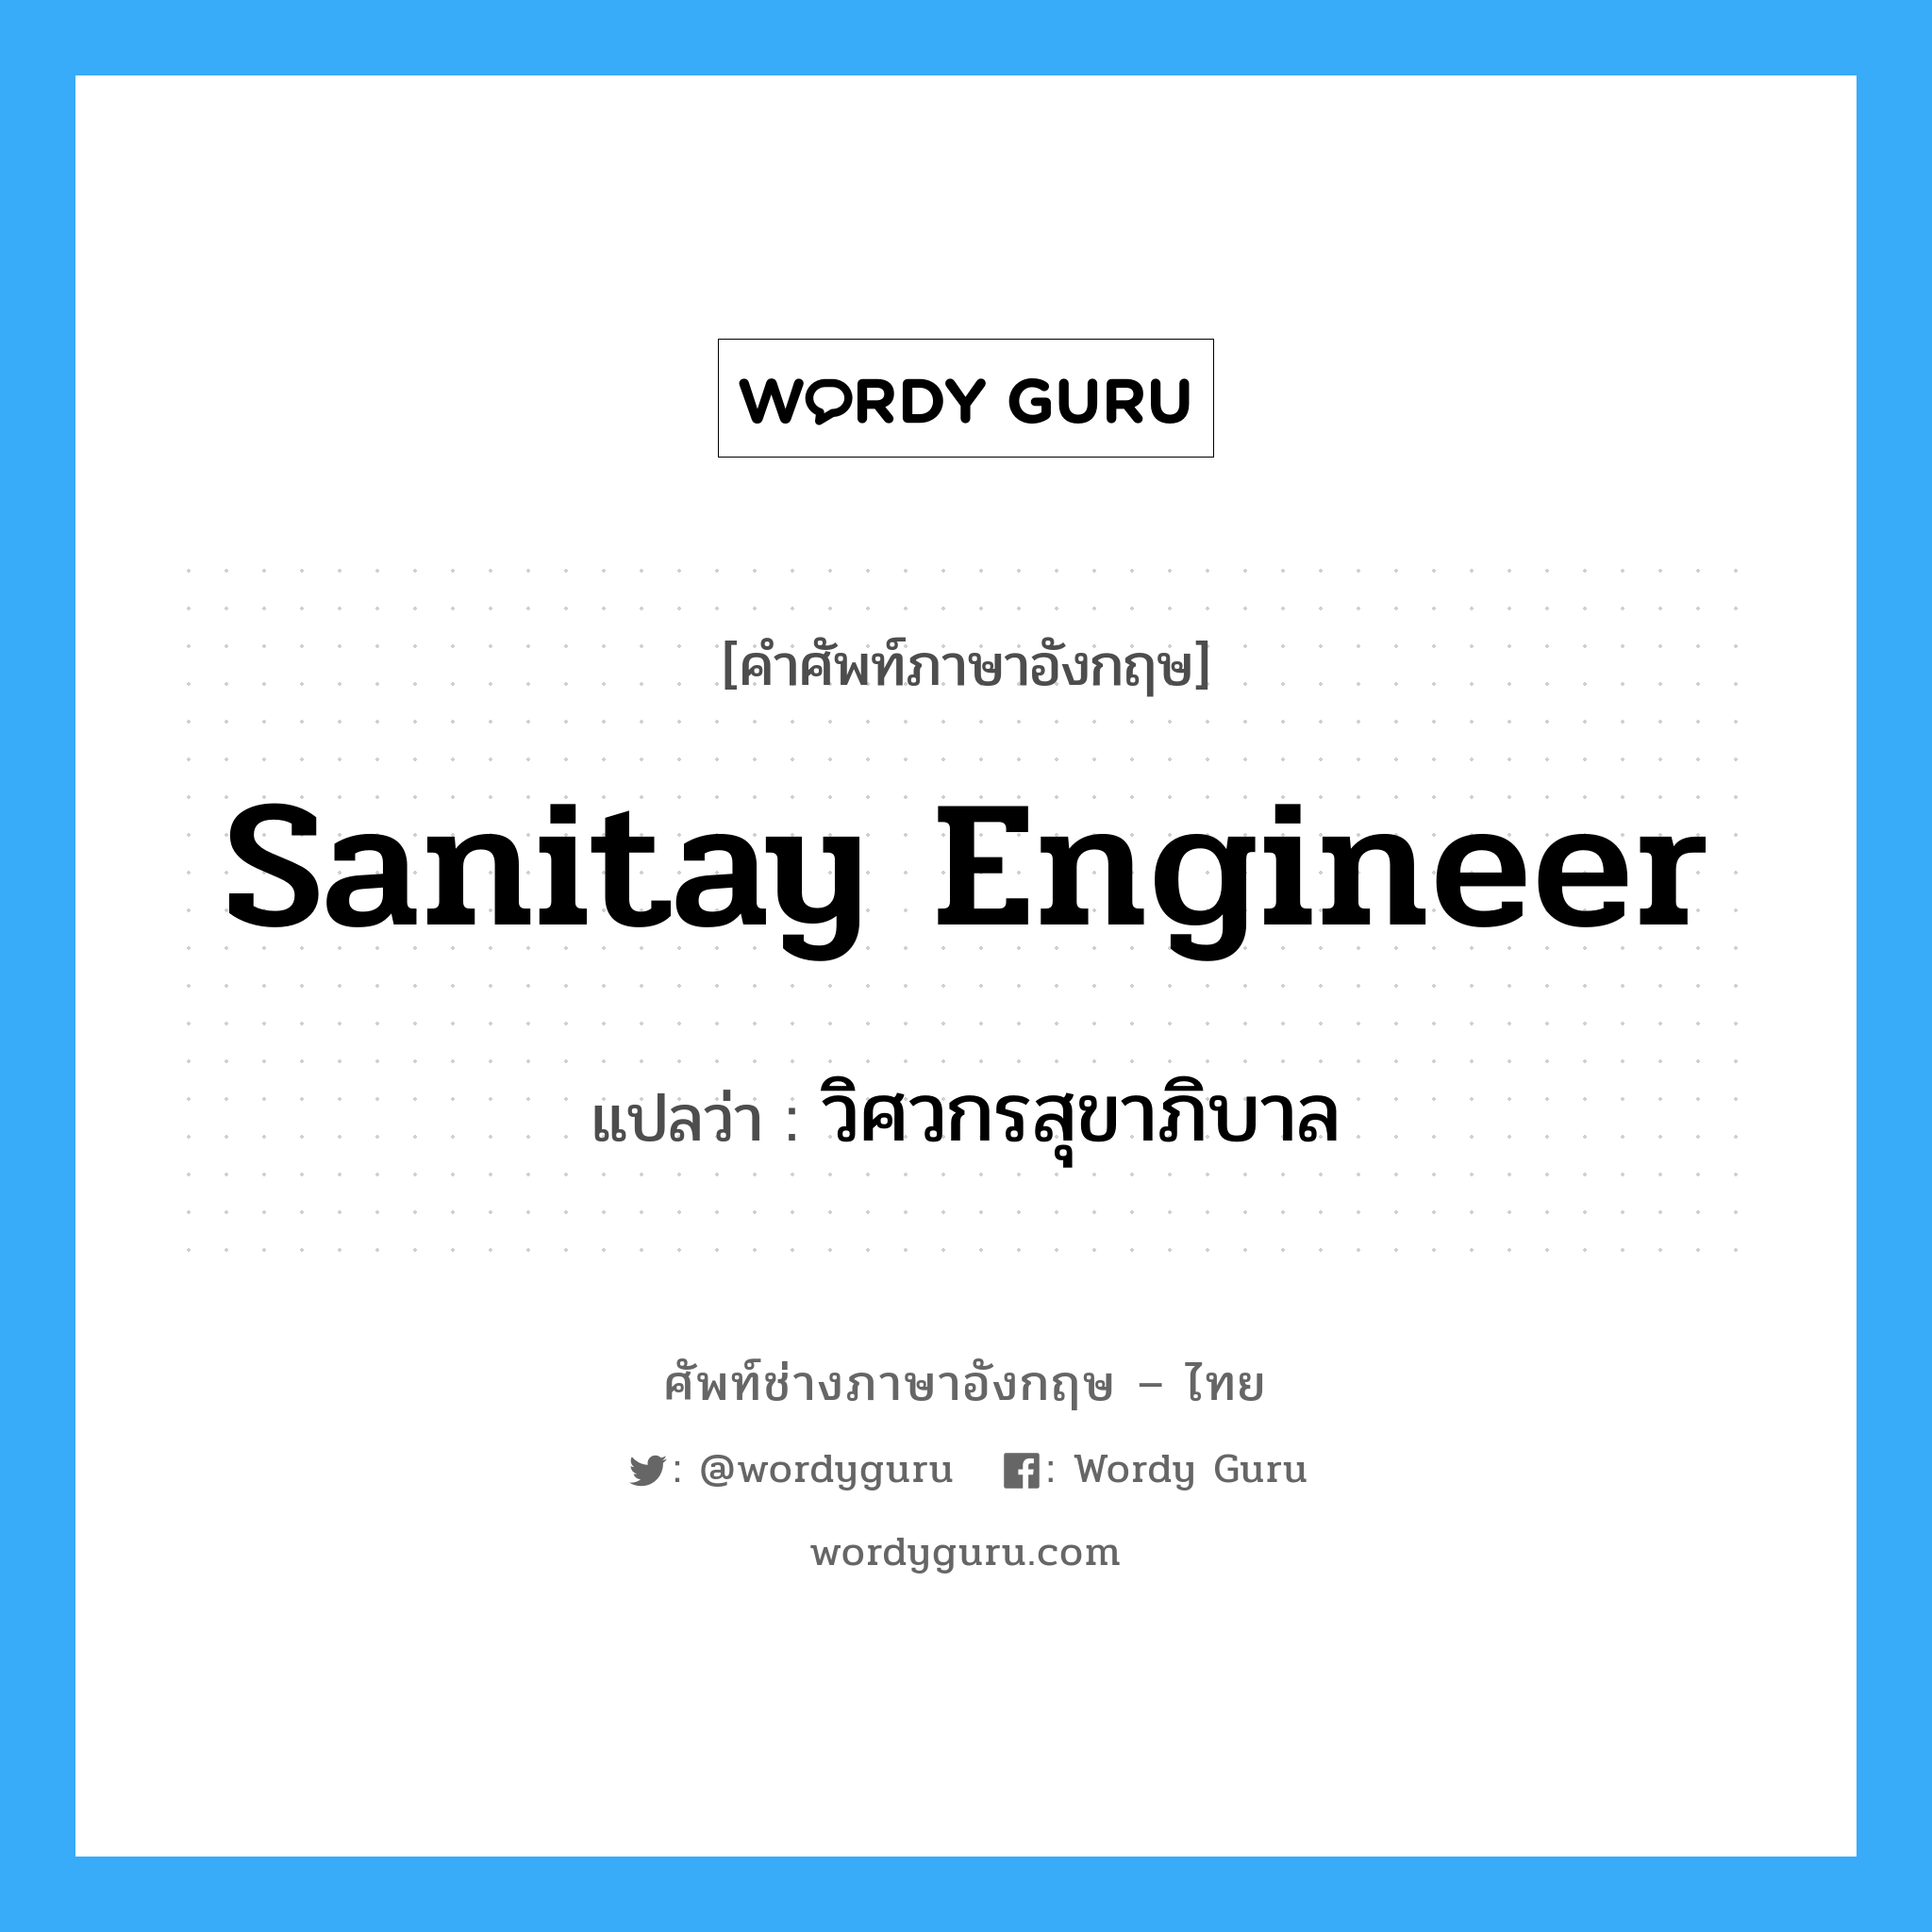 วิศวกรสุขาภิบาล ภาษาอังกฤษ?, คำศัพท์ช่างภาษาอังกฤษ - ไทย วิศวกรสุขาภิบาล คำศัพท์ภาษาอังกฤษ วิศวกรสุขาภิบาล แปลว่า sanitay engineer